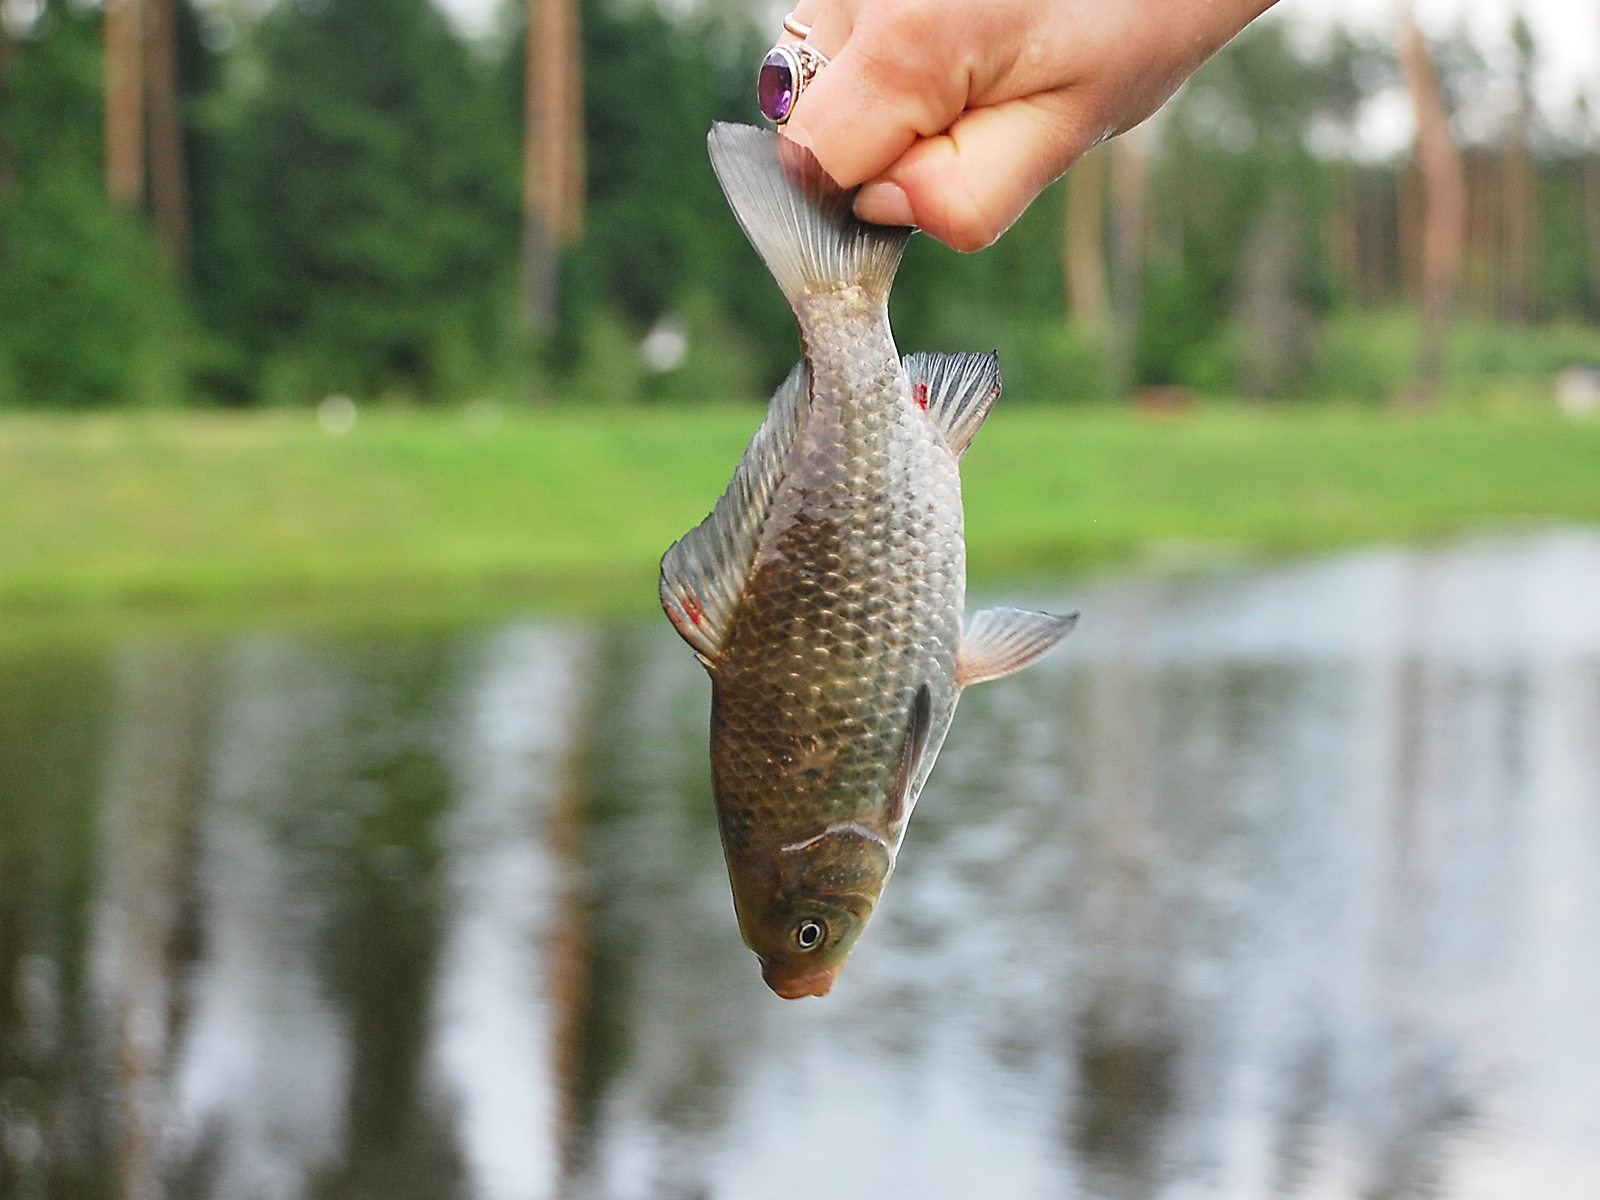 Поймать живую рыбу руками